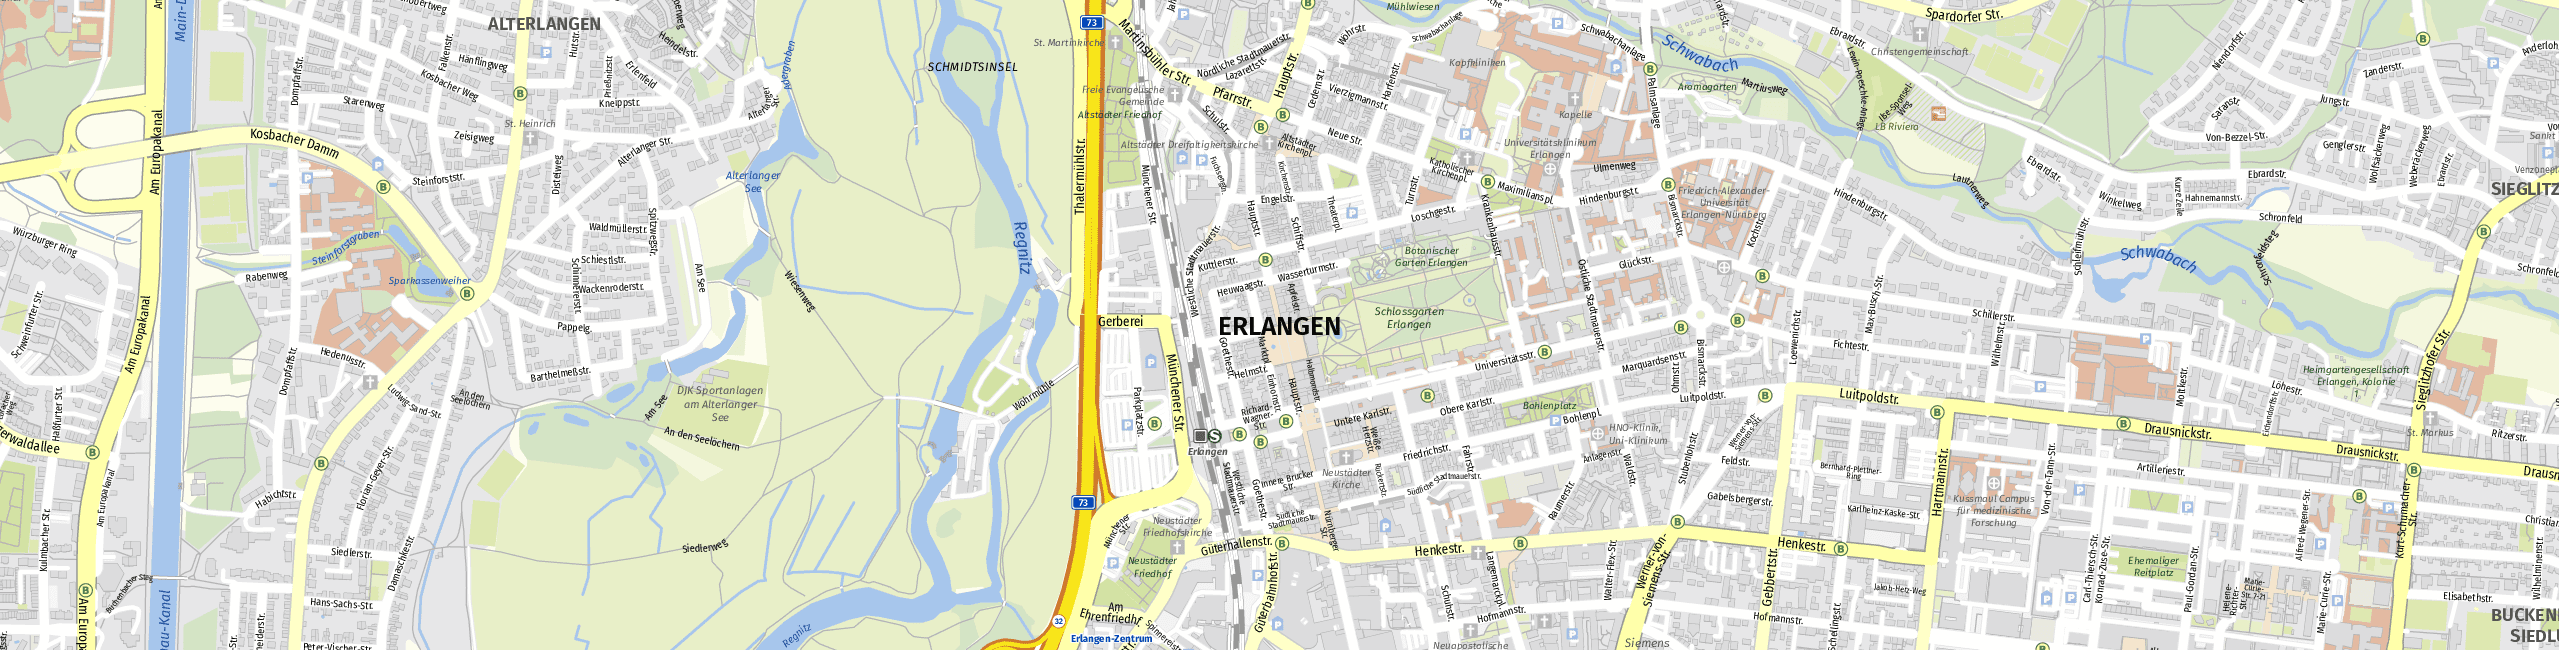 Stadtplan Erlangen zum Downloaden.